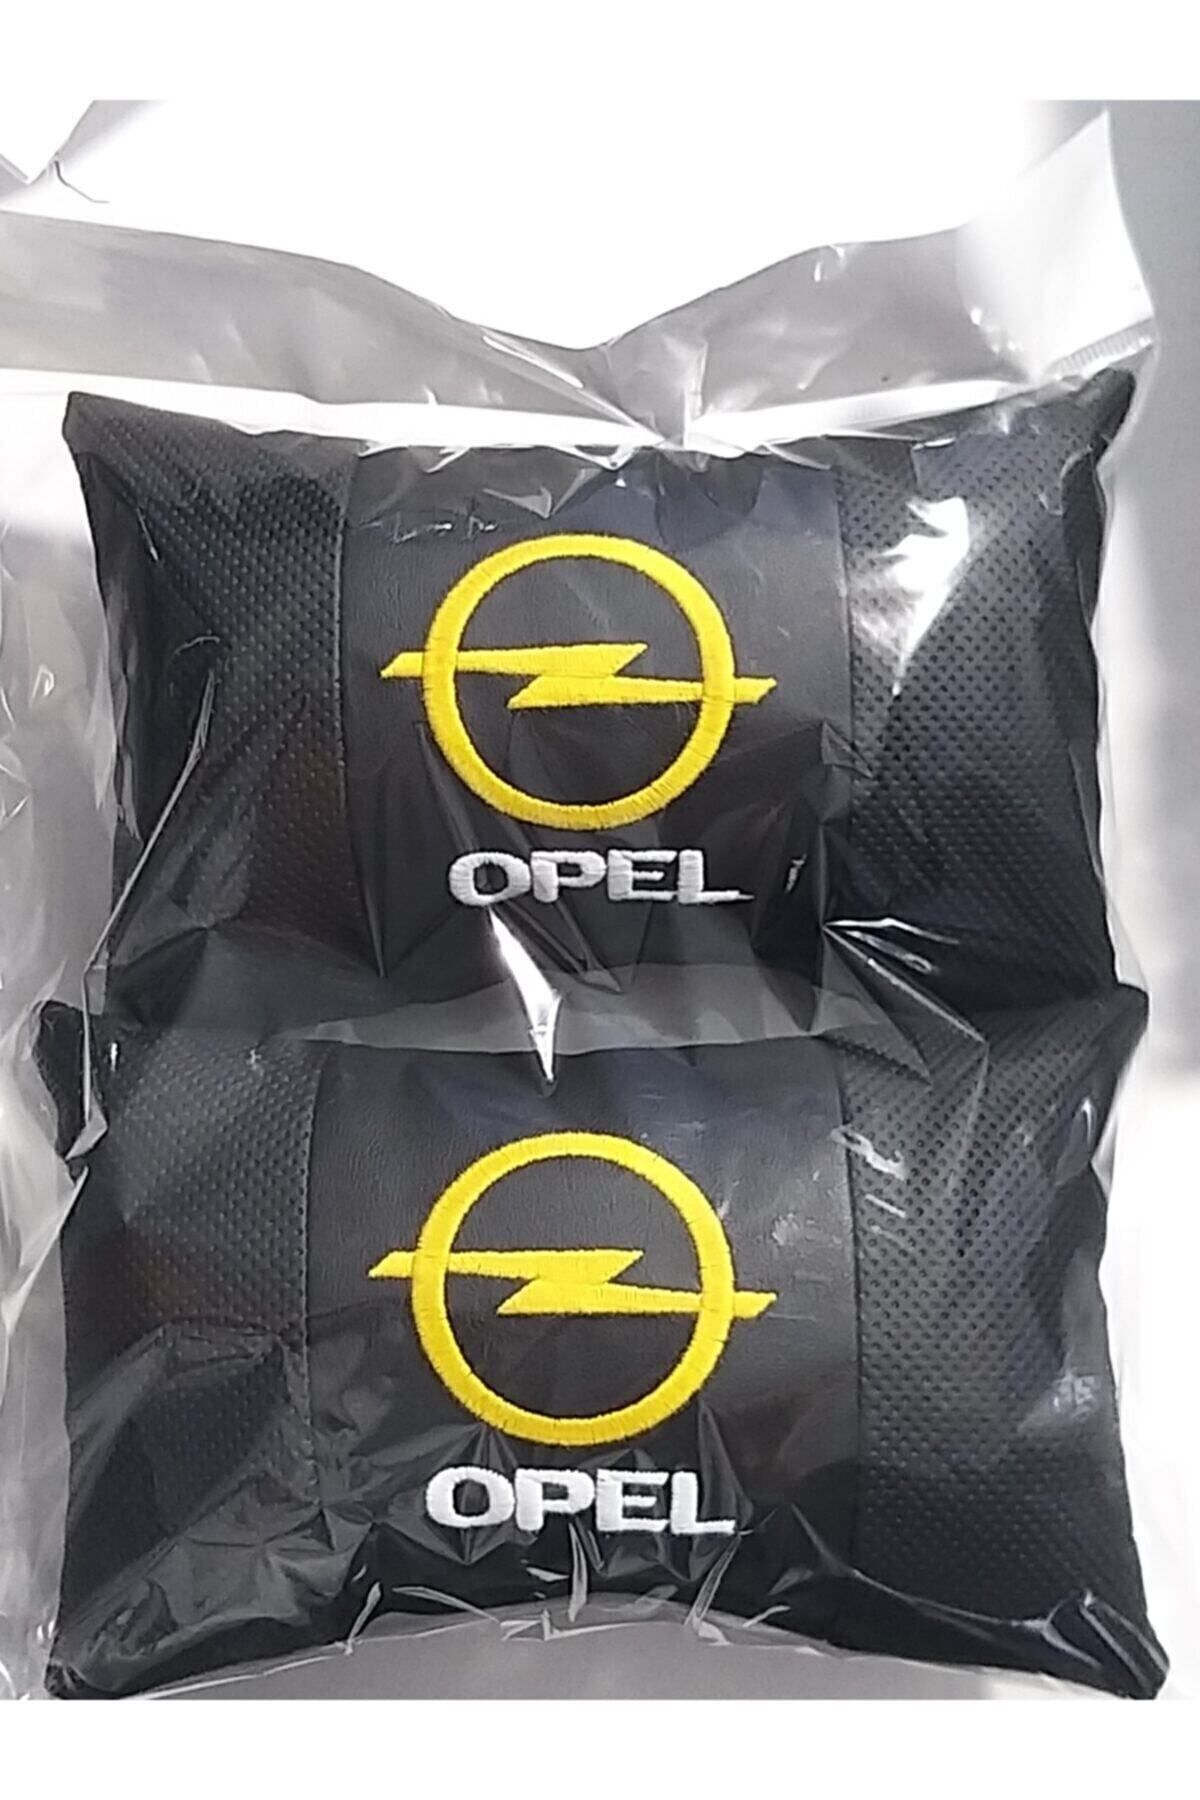 Opel Boyun Yastığı